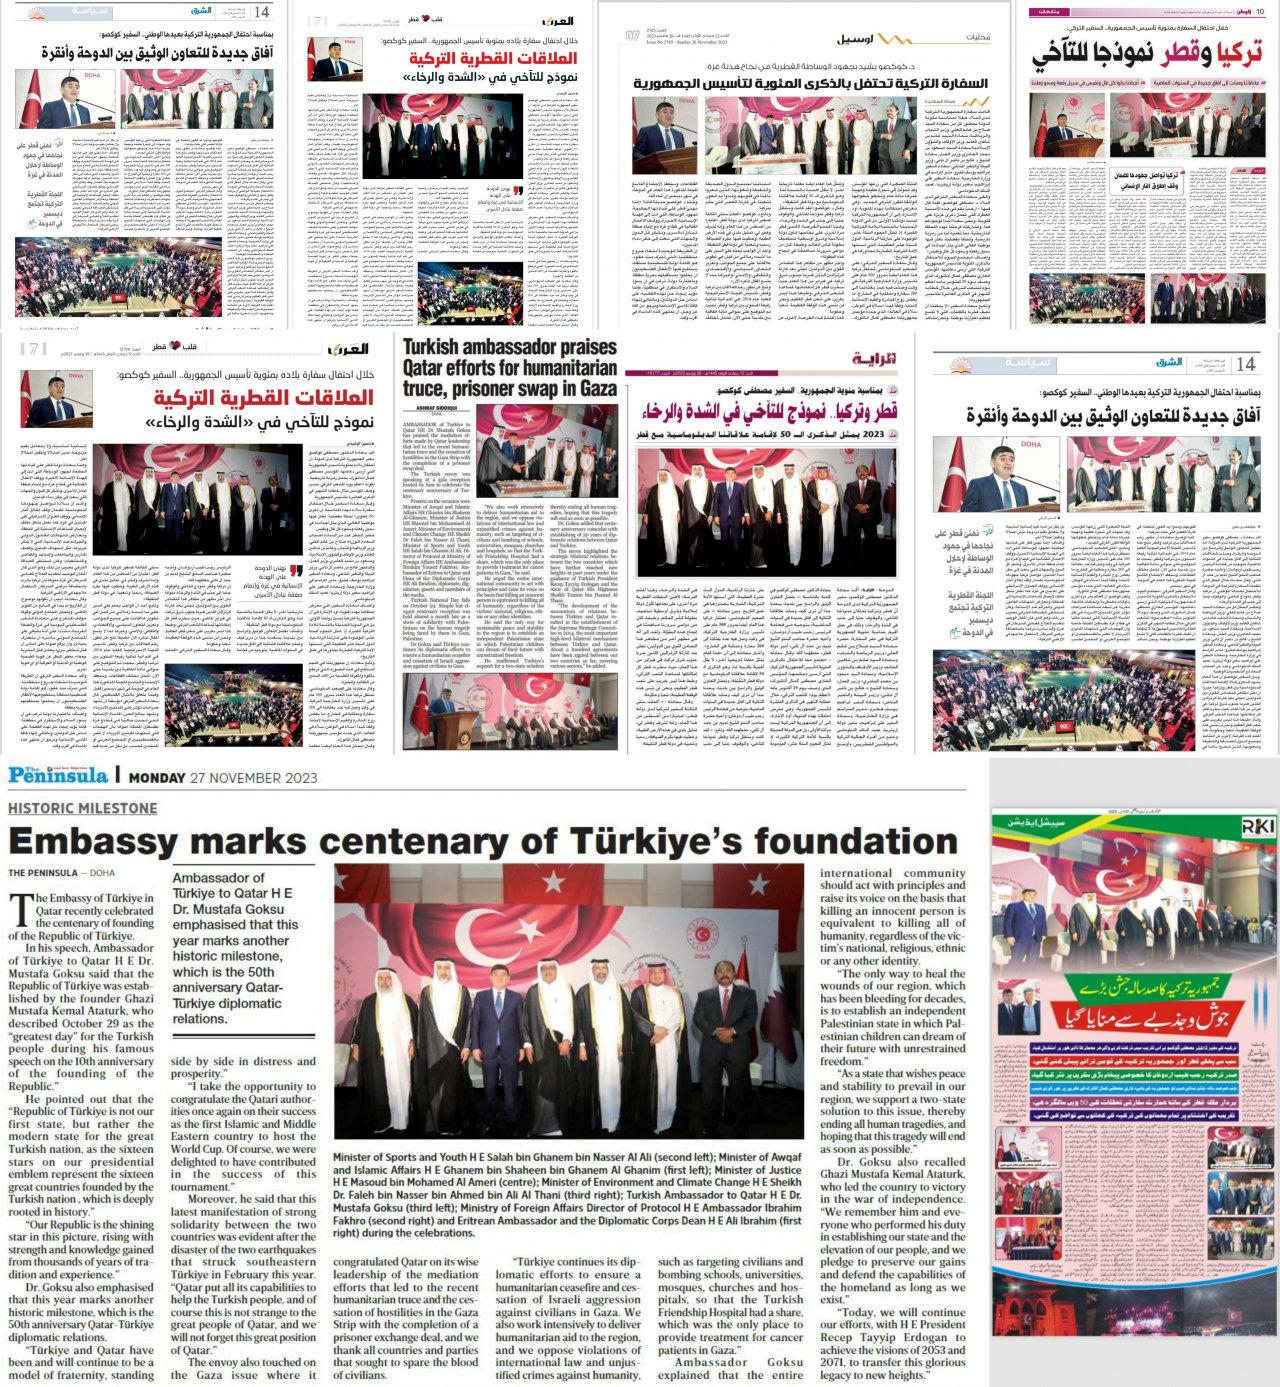 Büyükelçiye yönelik ‘29 Ekim’ kara propagandası çöktü: 2 bin 350 kişiyle çifte kutlama